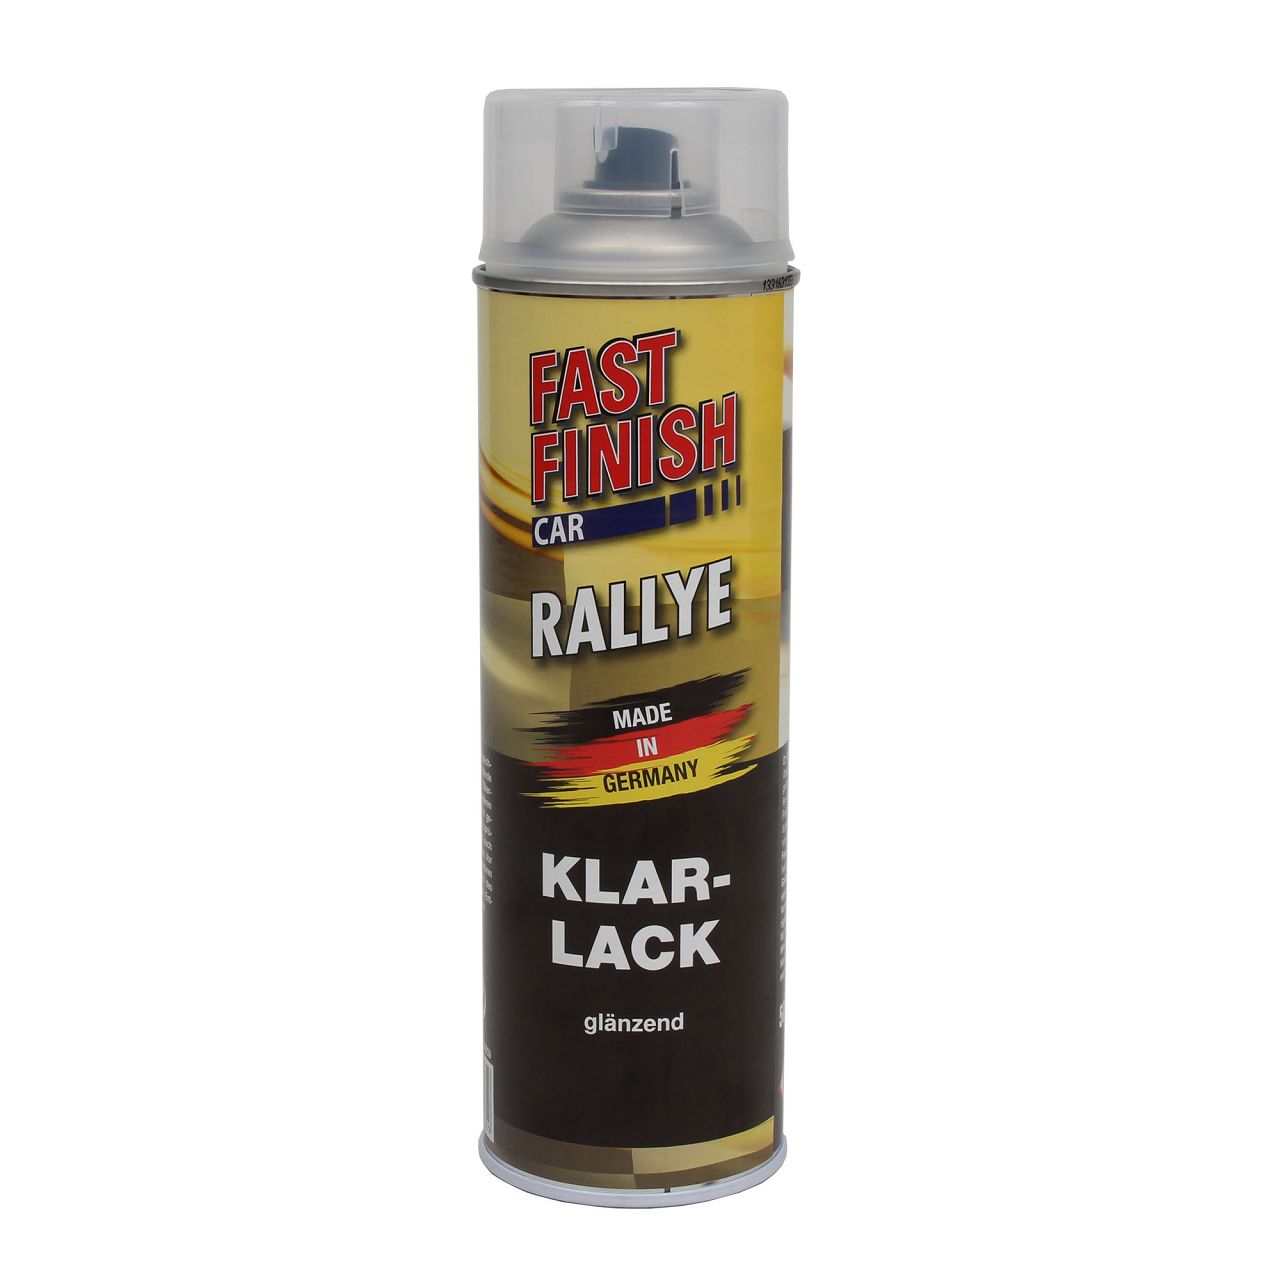 6x 500 ml FAST FINISH Car Rallye Klarlack Lackspray glänzend Spraydose 292859